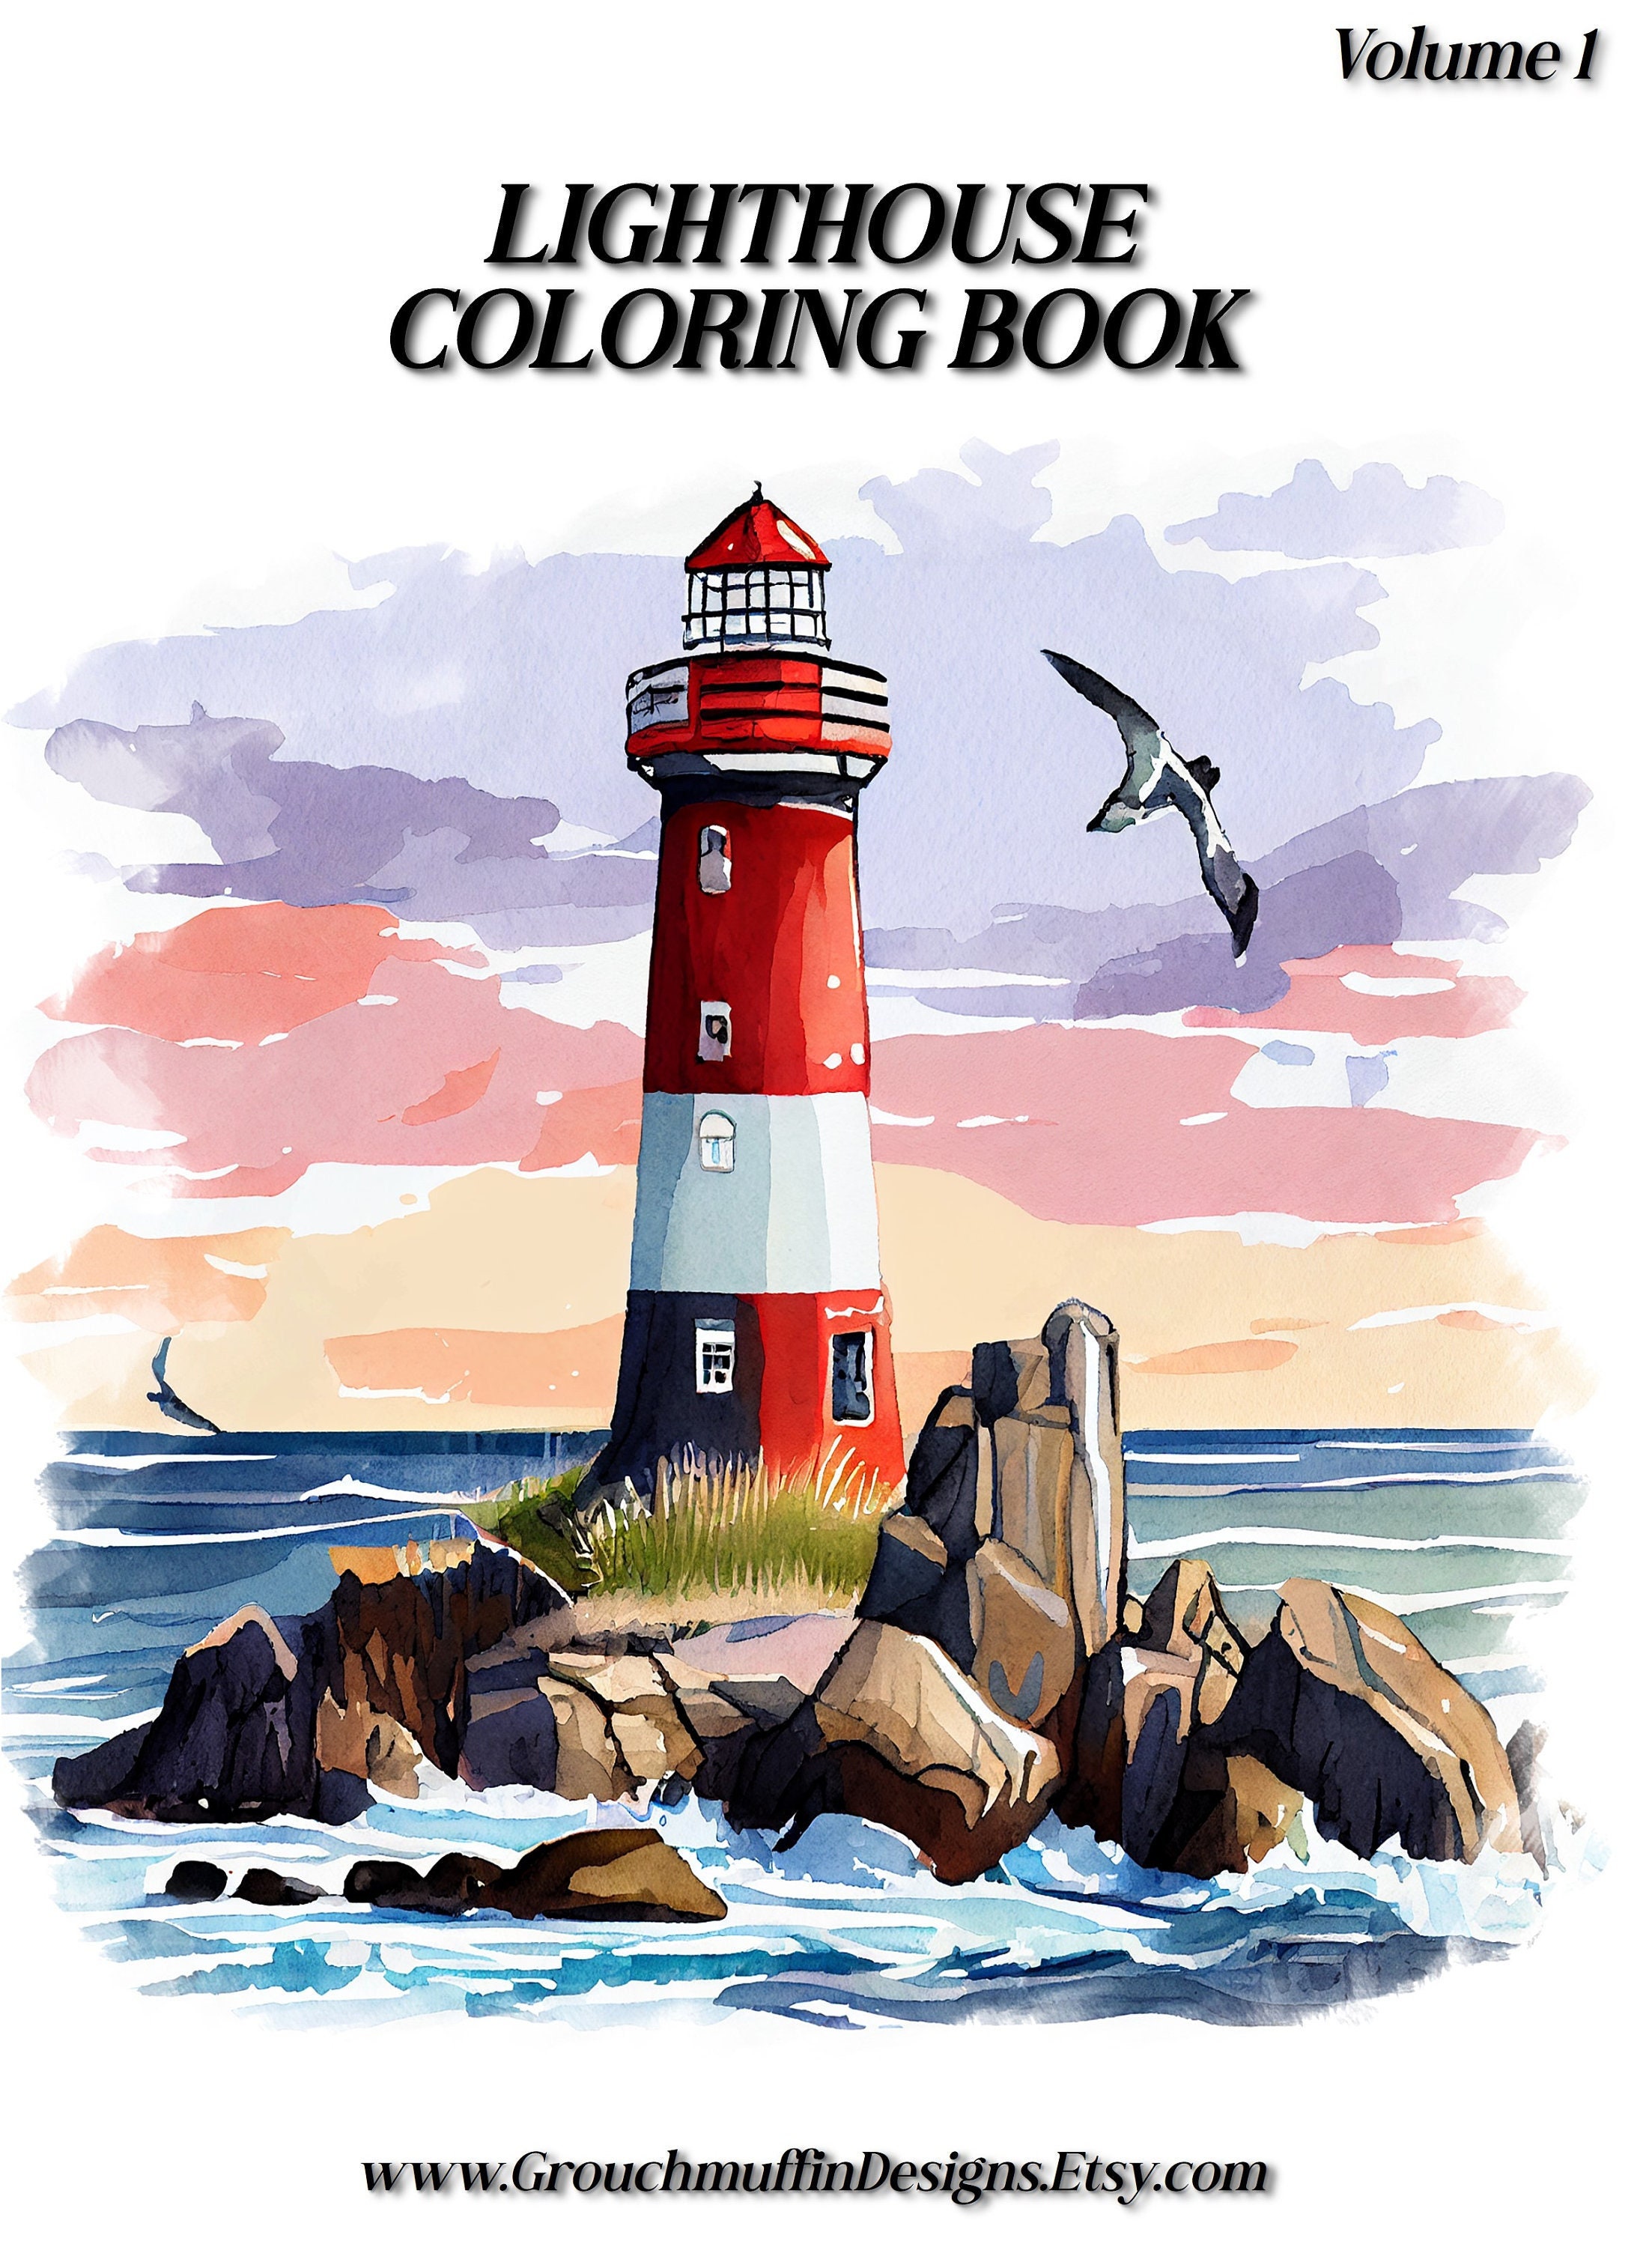 Pocket Watercolor Painting Book, DIY Magic Water Coloring Books